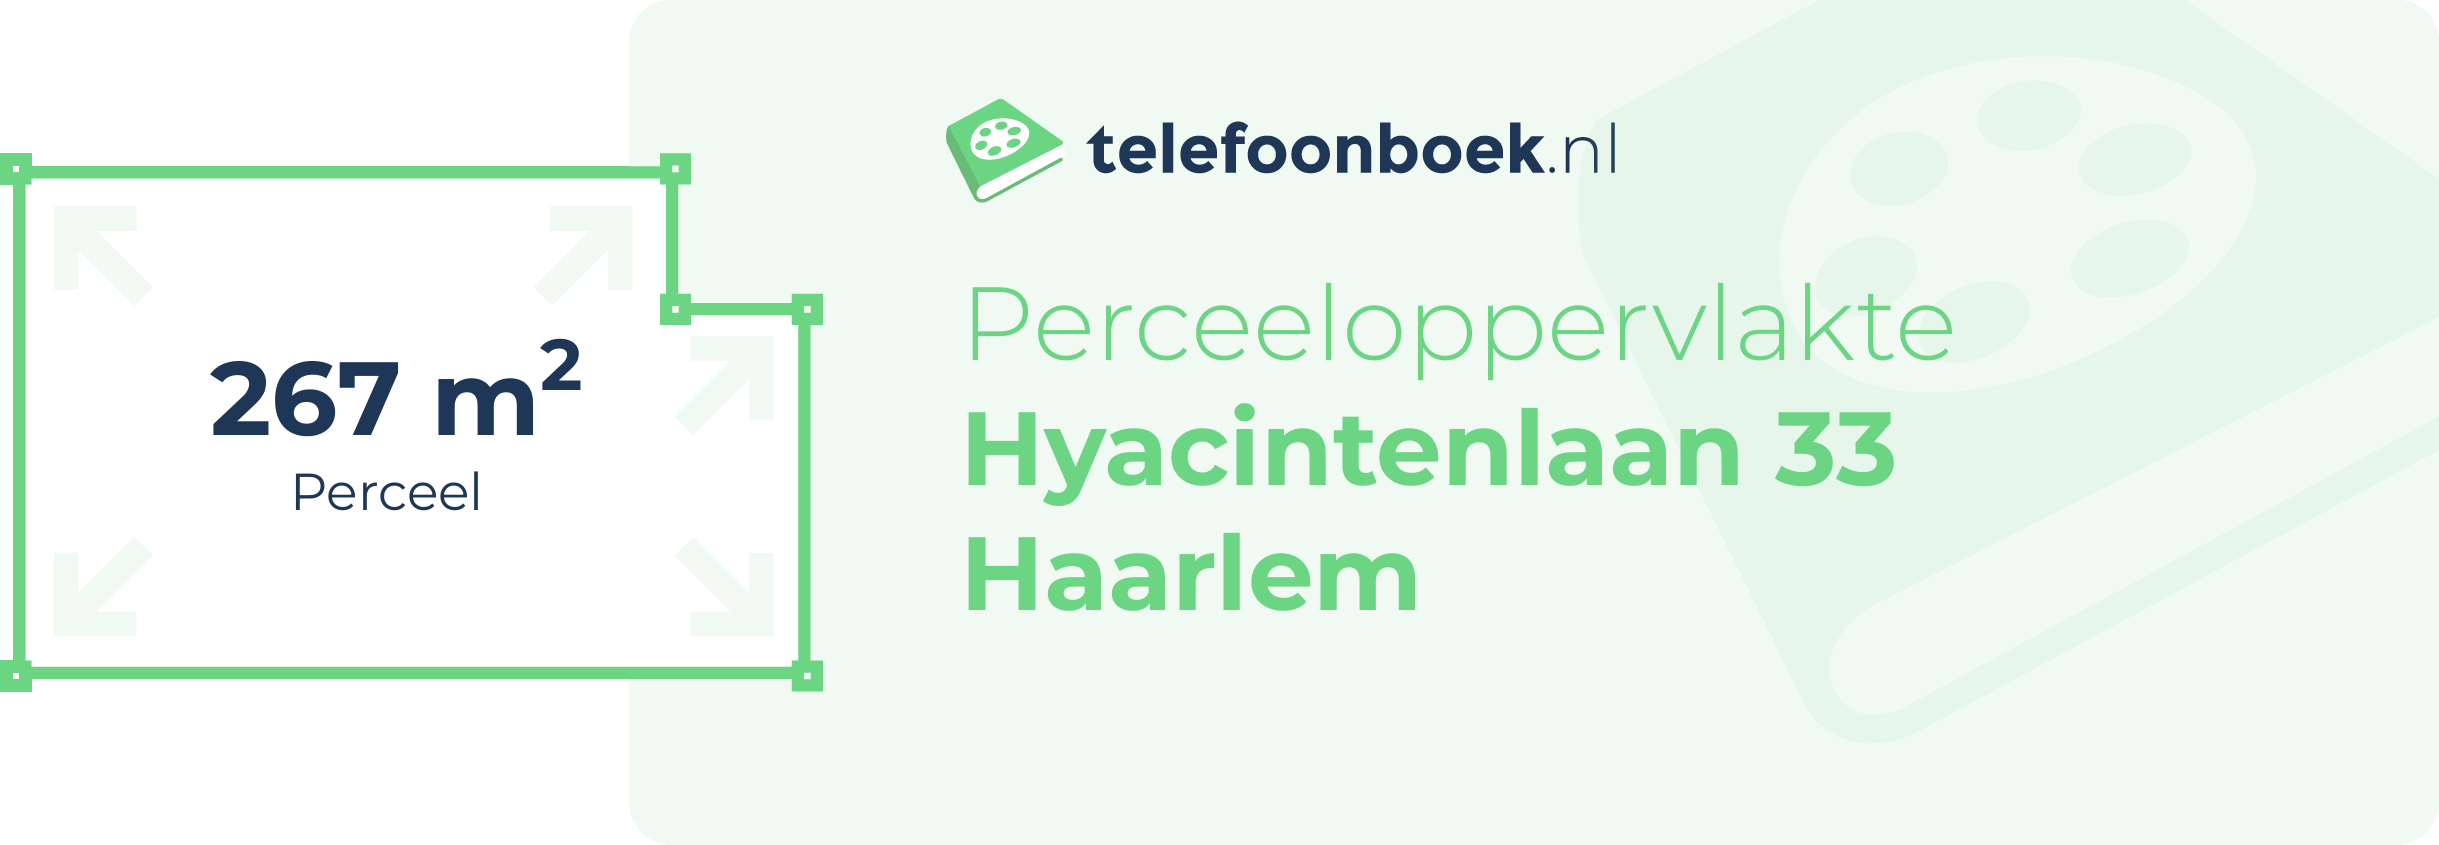 Perceeloppervlakte Hyacintenlaan 33 Haarlem